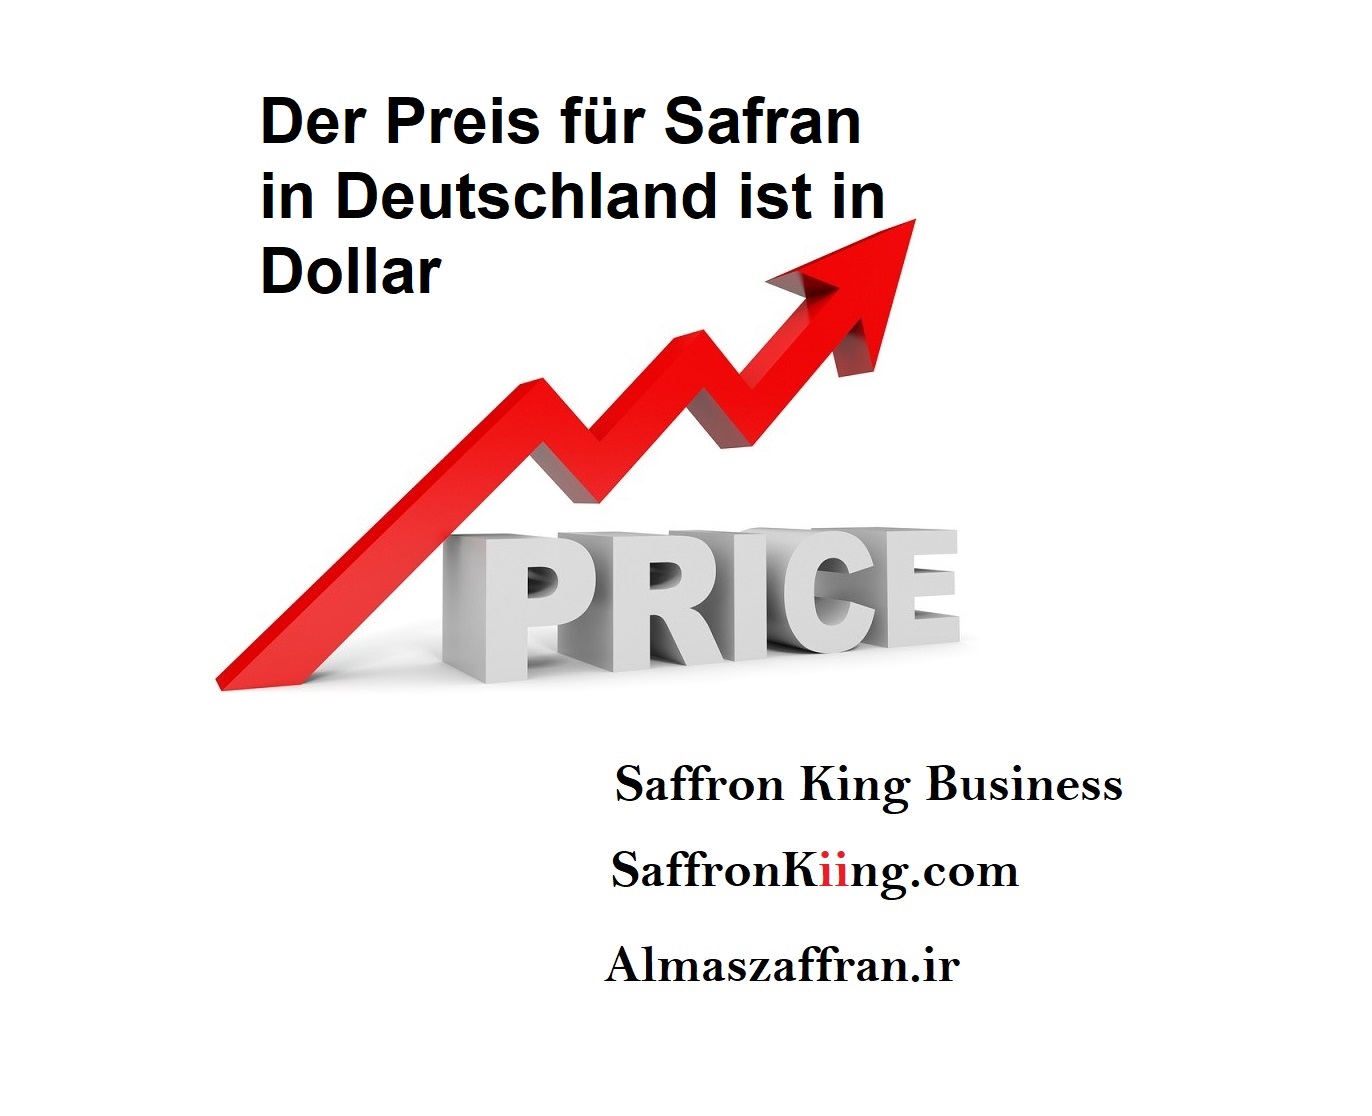 Der Preis für Safran in Deutschland ist in Dollar